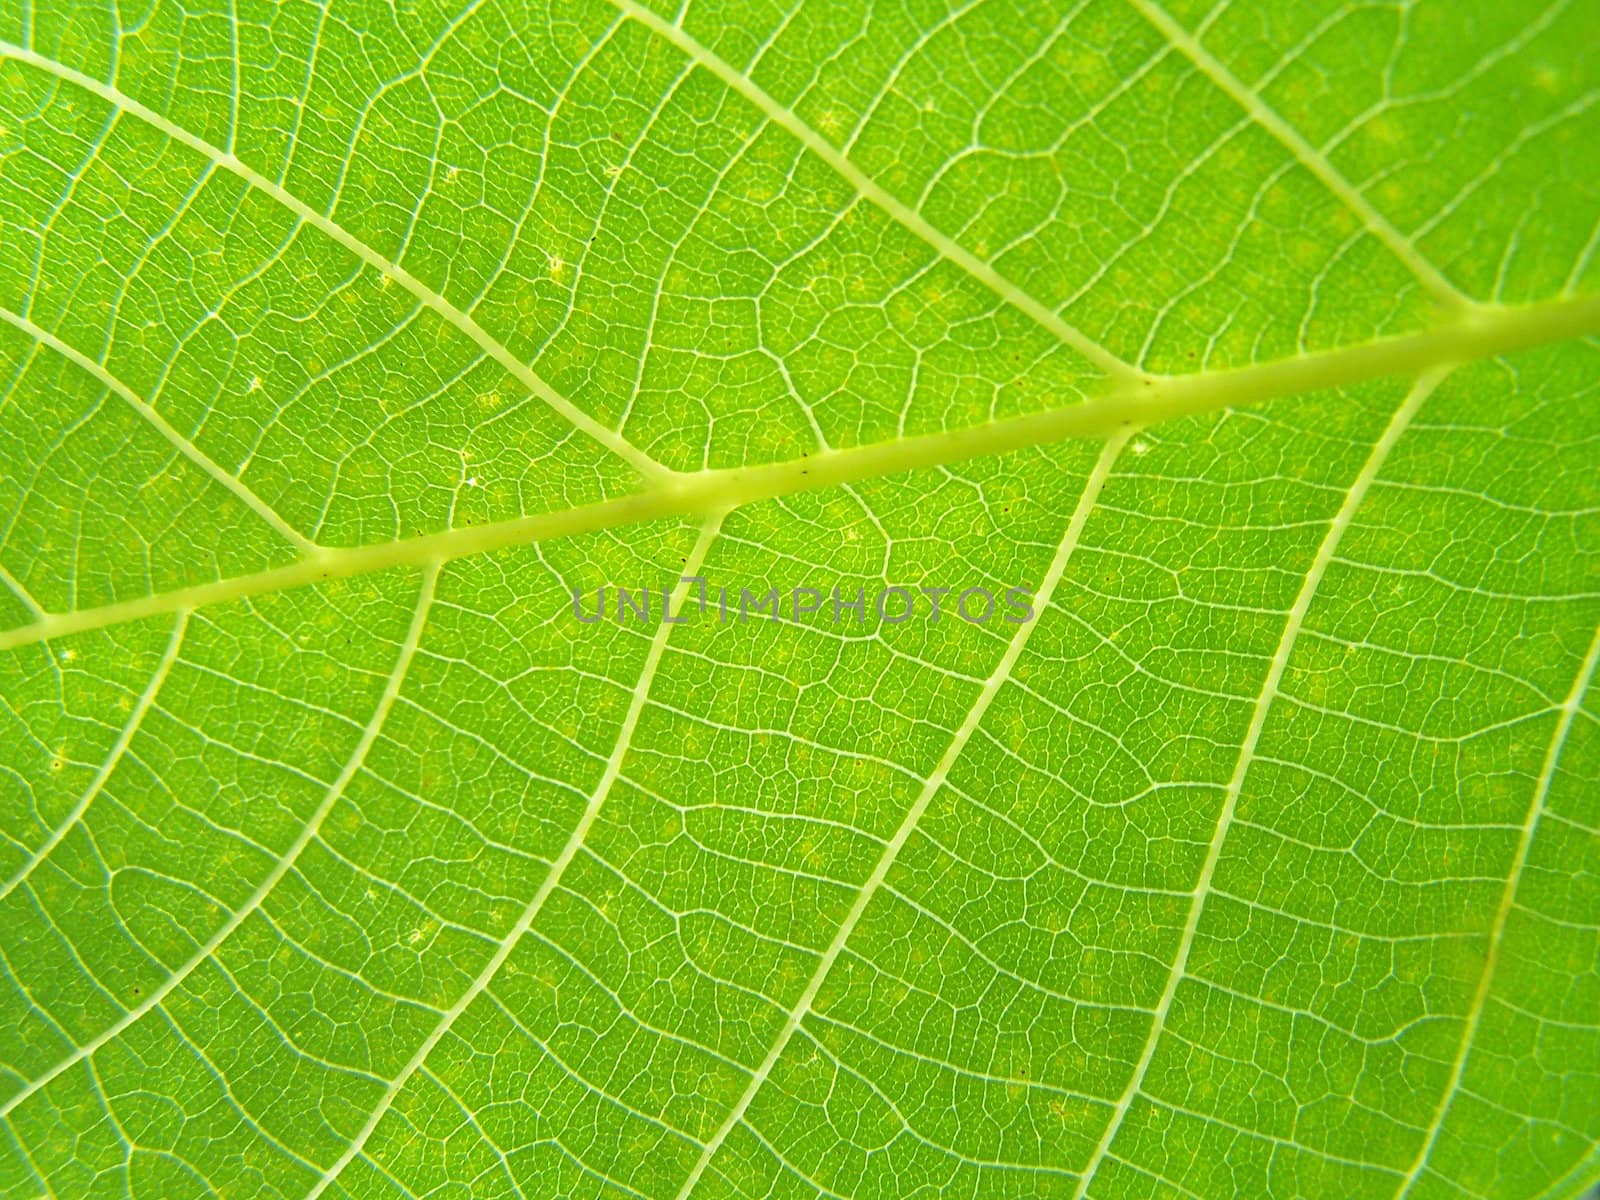 Walnut leaf by Lessadar